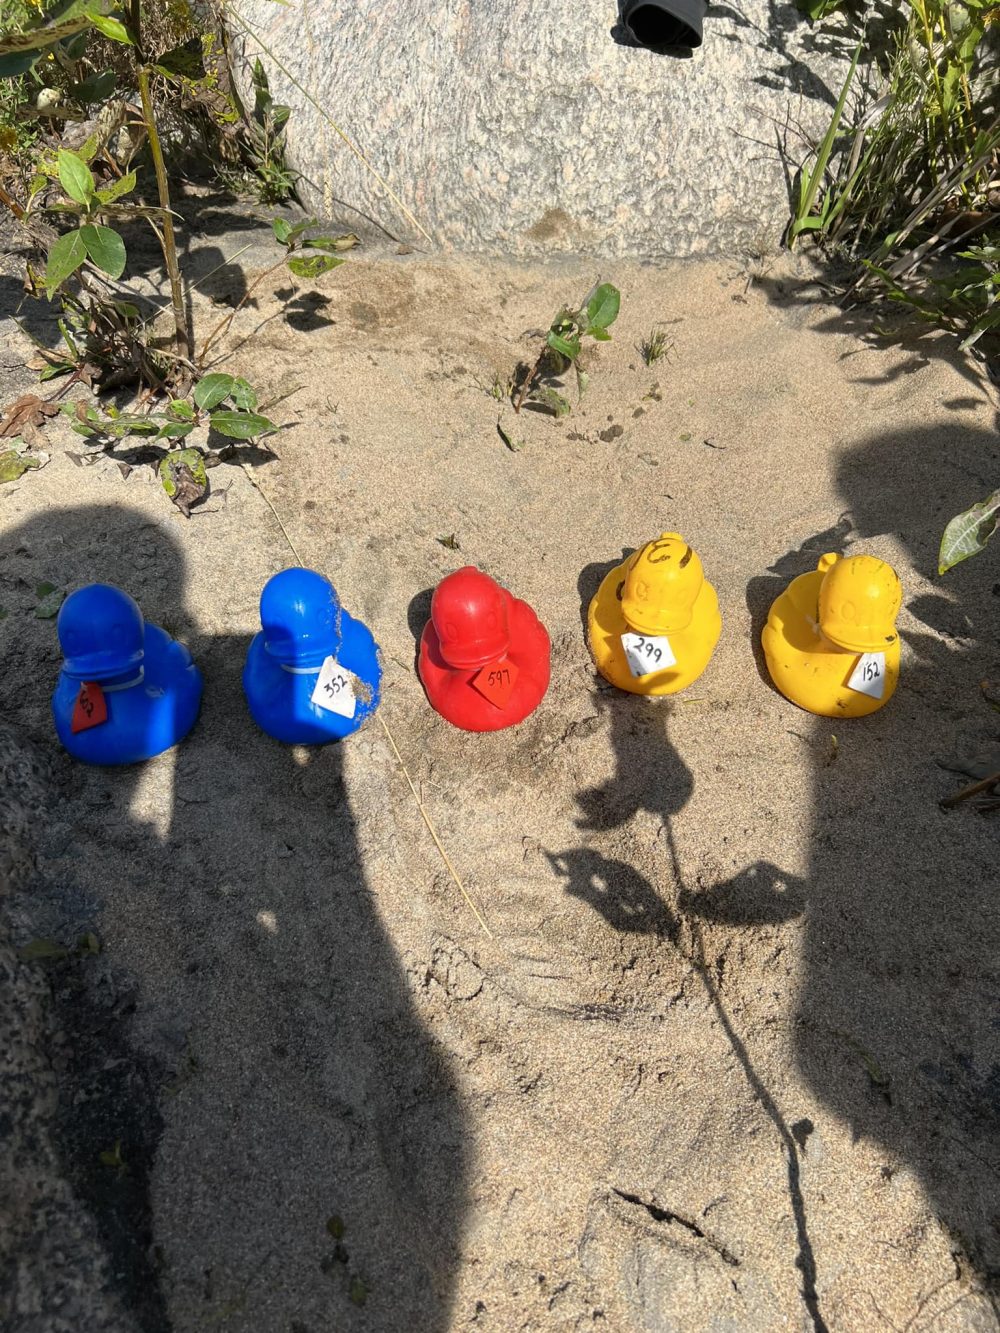 Cinq canards en plastique de couleur jaune, rouge et bleu sur le sable